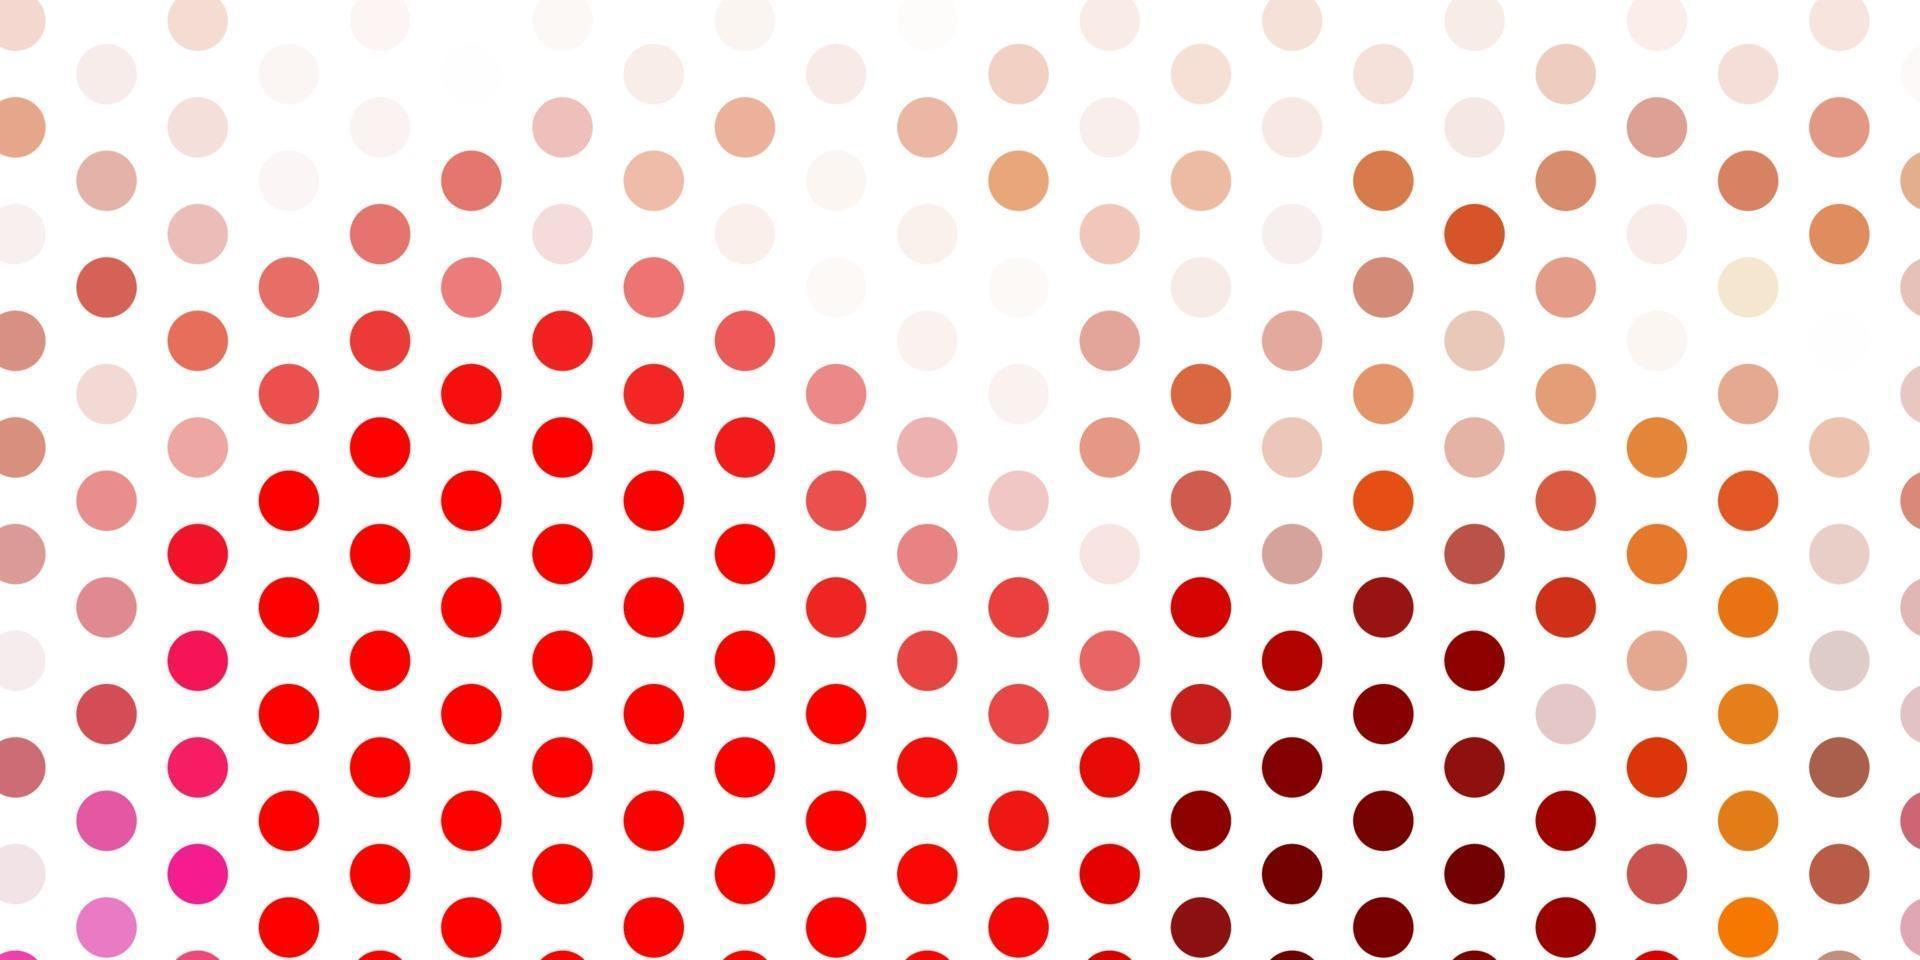 modelo de vetor vermelho e amarelo claro com círculos.